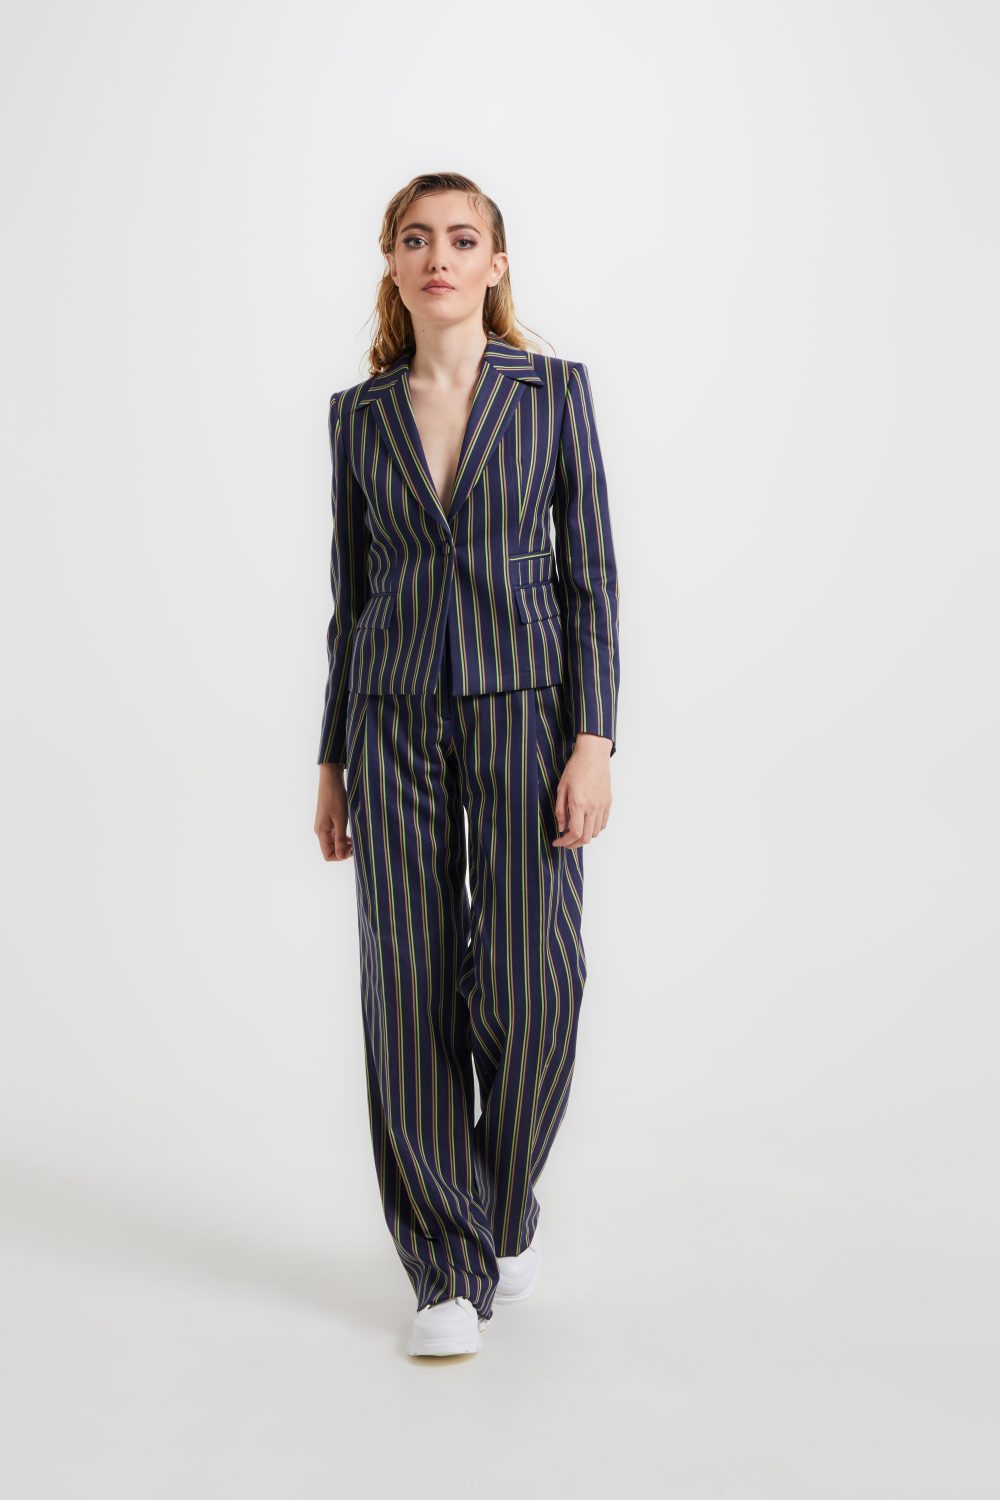 suit brooke stripes woman